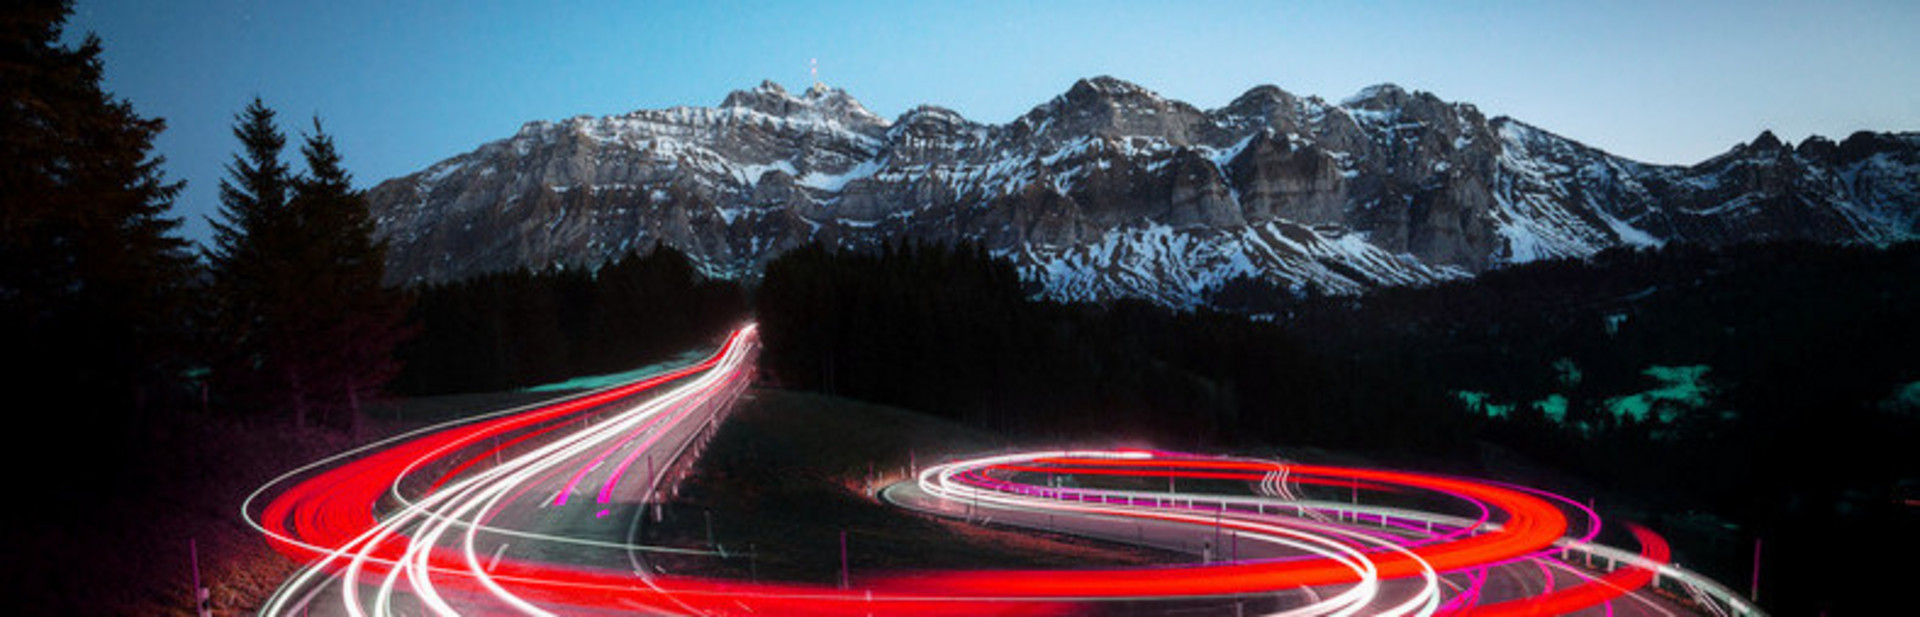 Kurvenreichen Straße, die durch die roten Rücklichter der Fahrzeuge beleuchtet wird, vor dem Hintergrund von Bergen.